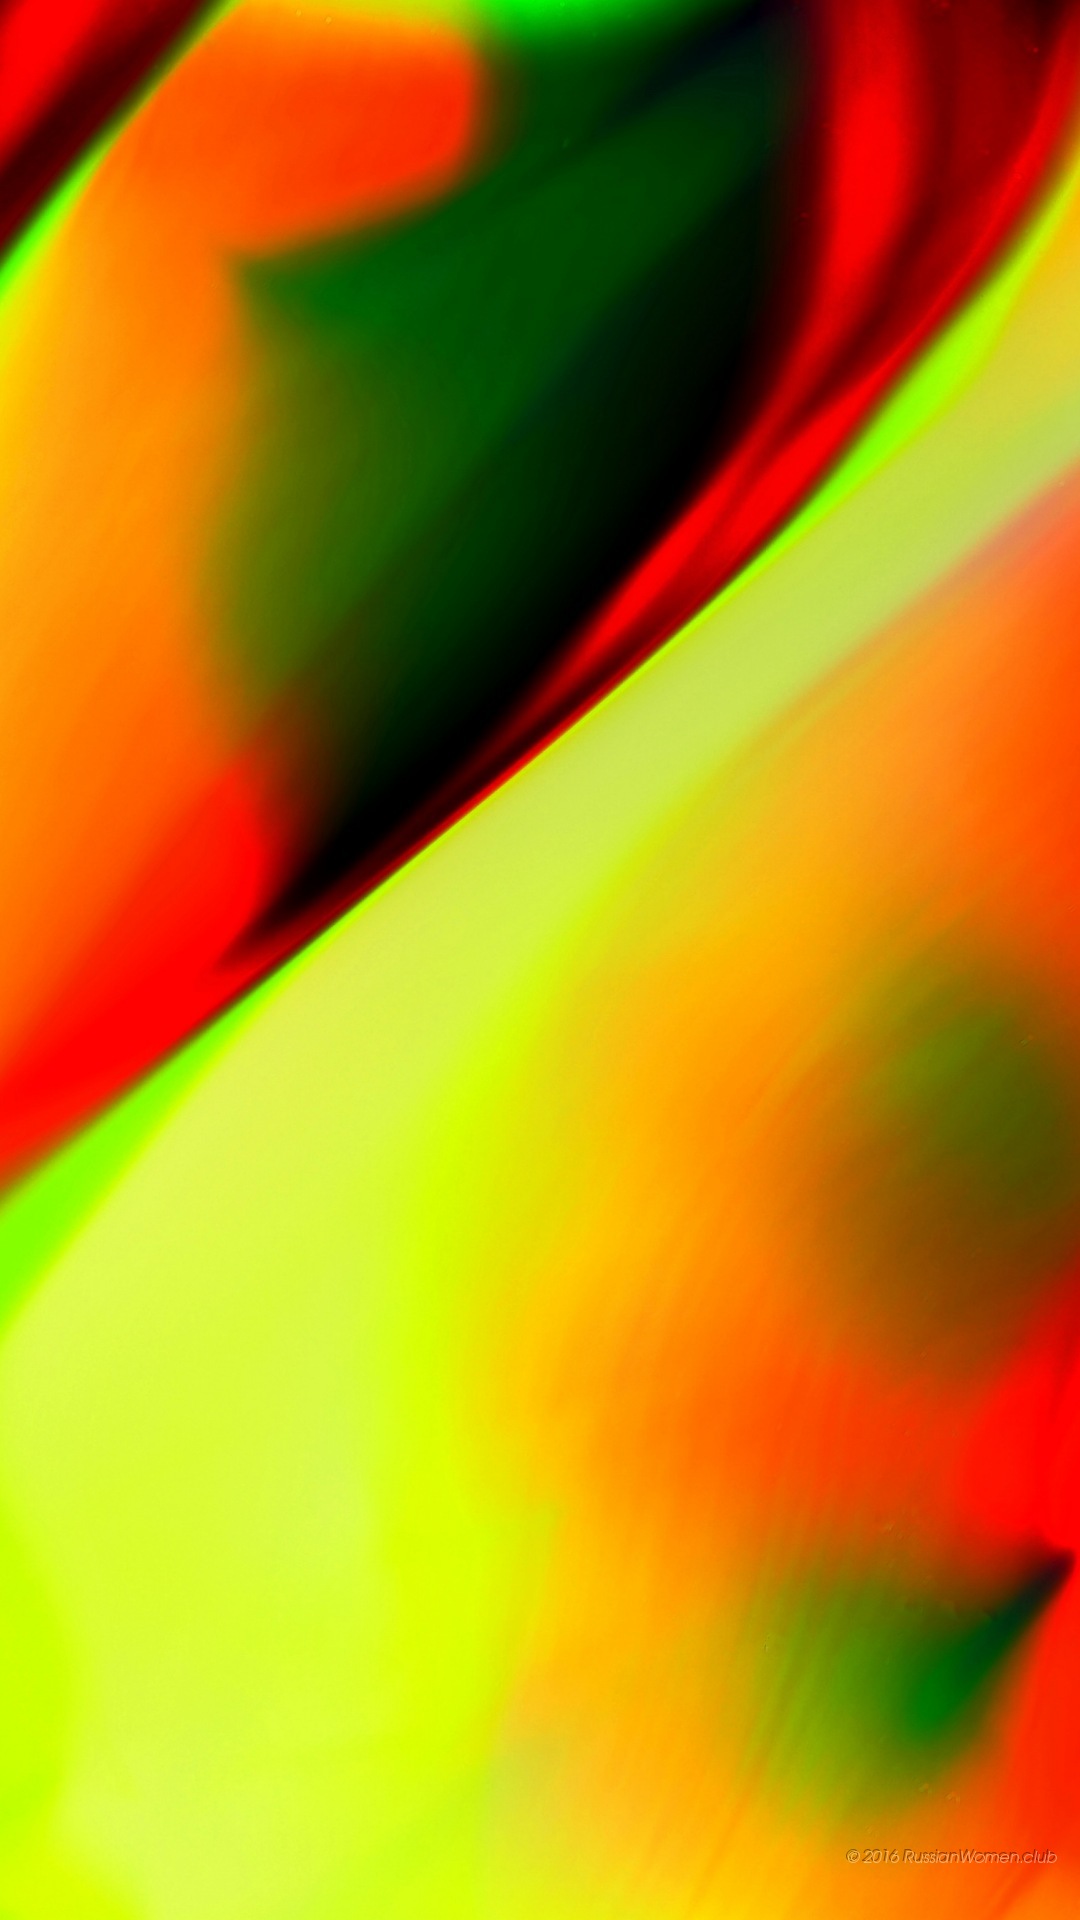 samsung a5 2016 fondo de pantalla,verde,rojo,naranja,amarillo,colorido